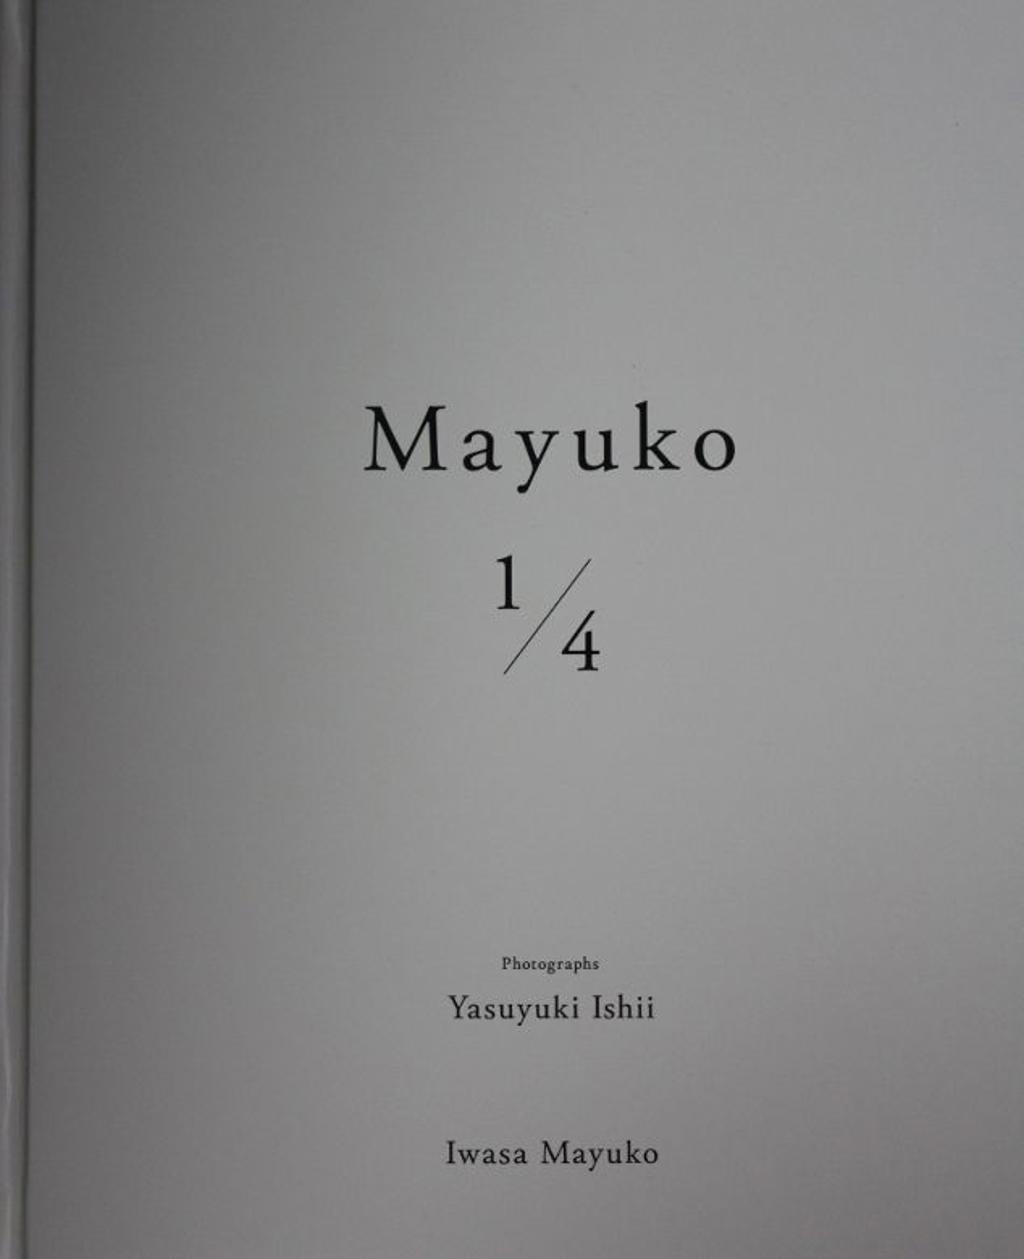 「Mayuko 14」